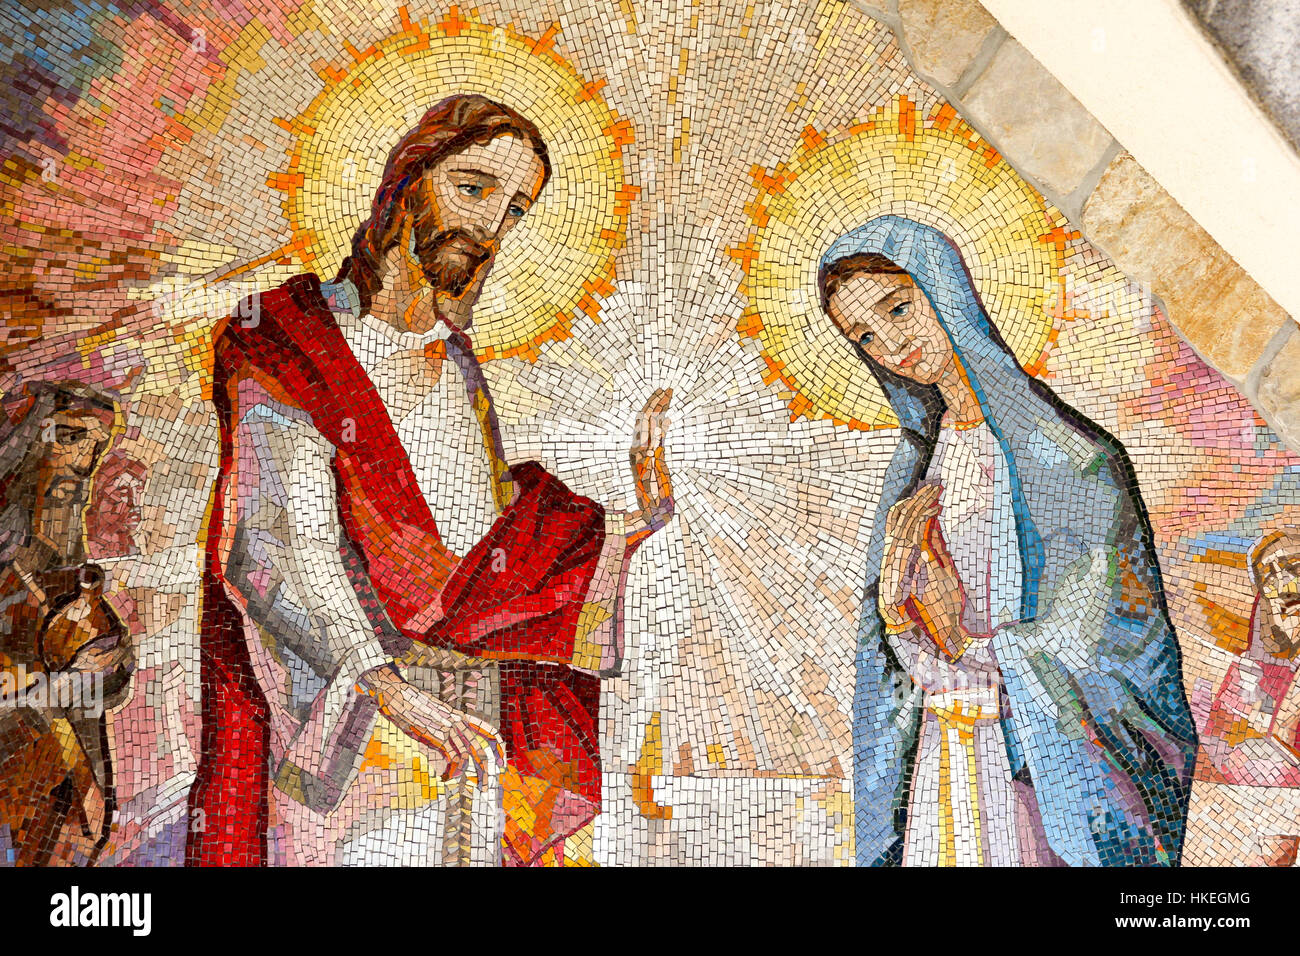 Mosaico di le nozze di Cana di Galilea dove Gesù Cristo ha fatto il suo primo miracolo su l intercessione della sua Madre Maria. Il secondo mistero luminoso. Foto Stock